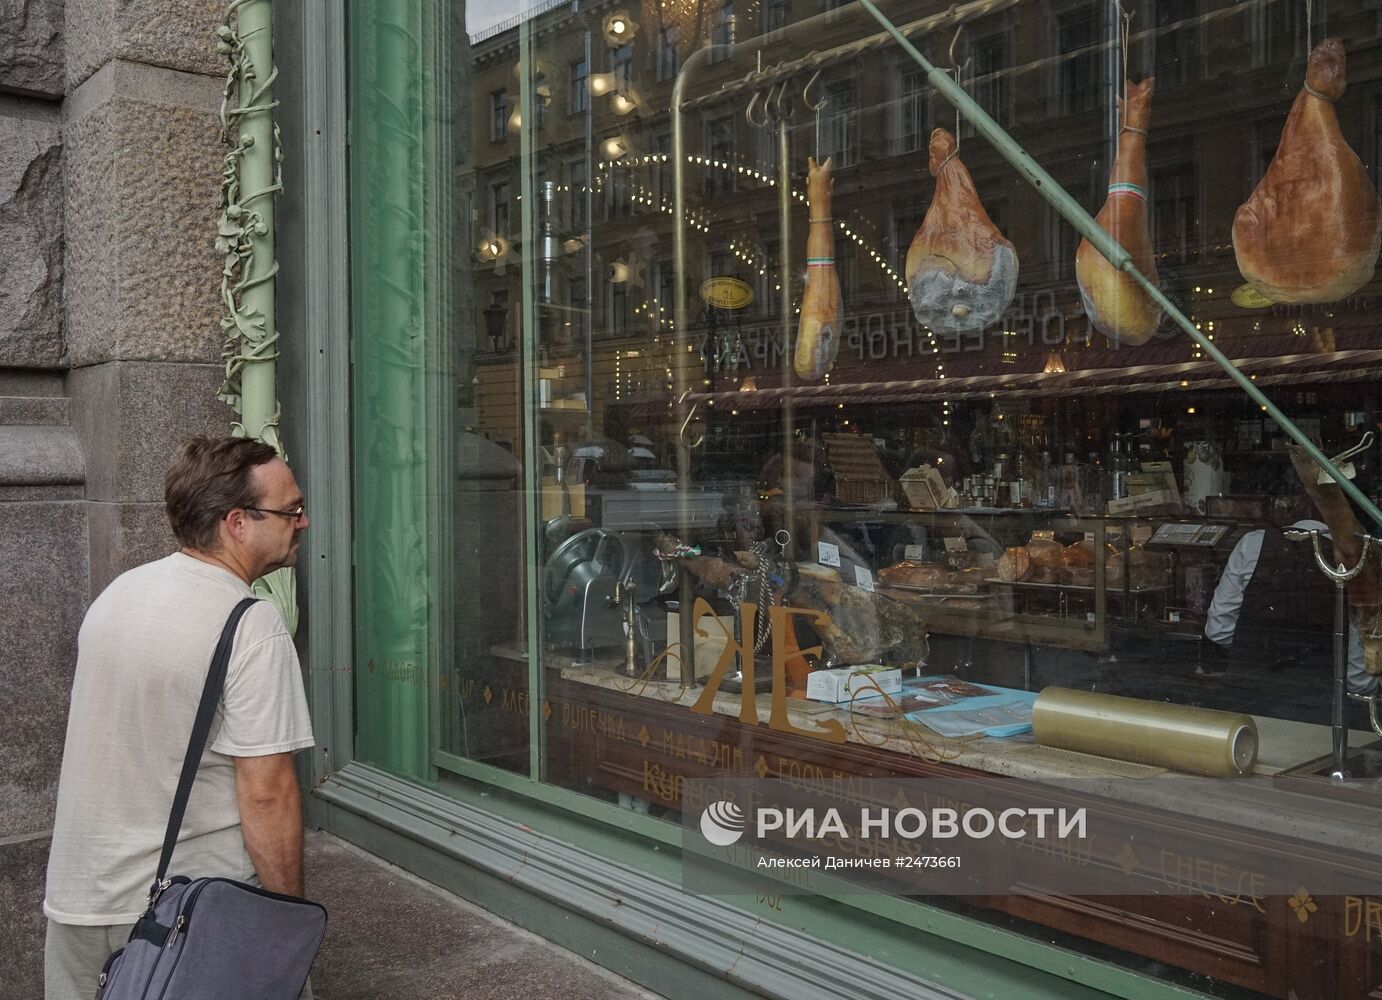 Продажа импортных сыров и мяса в Елисеевском магазине в Санкт-Петербурге